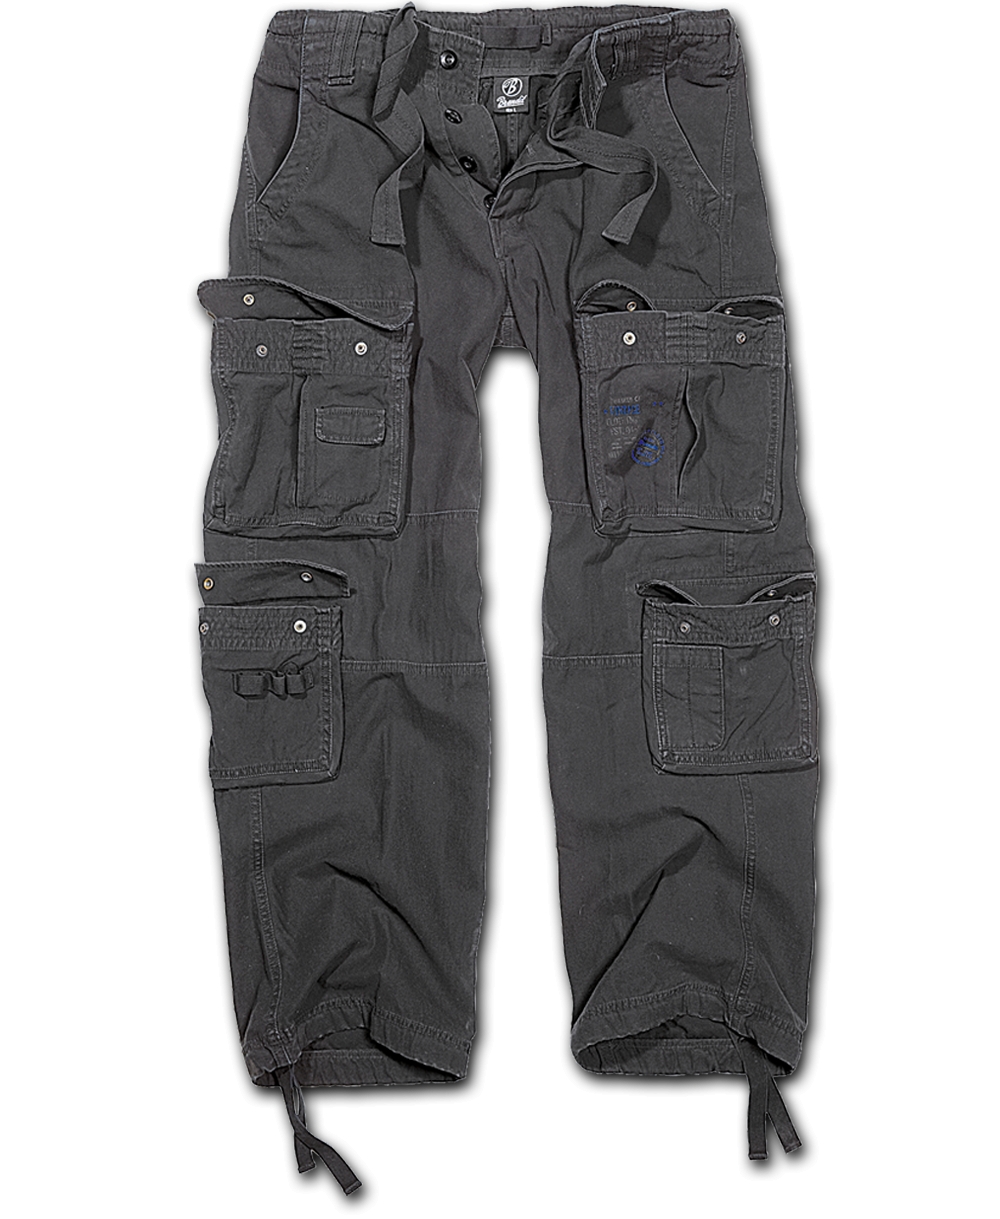 Kalhoty Brandit Pure Vintage - černé, XL